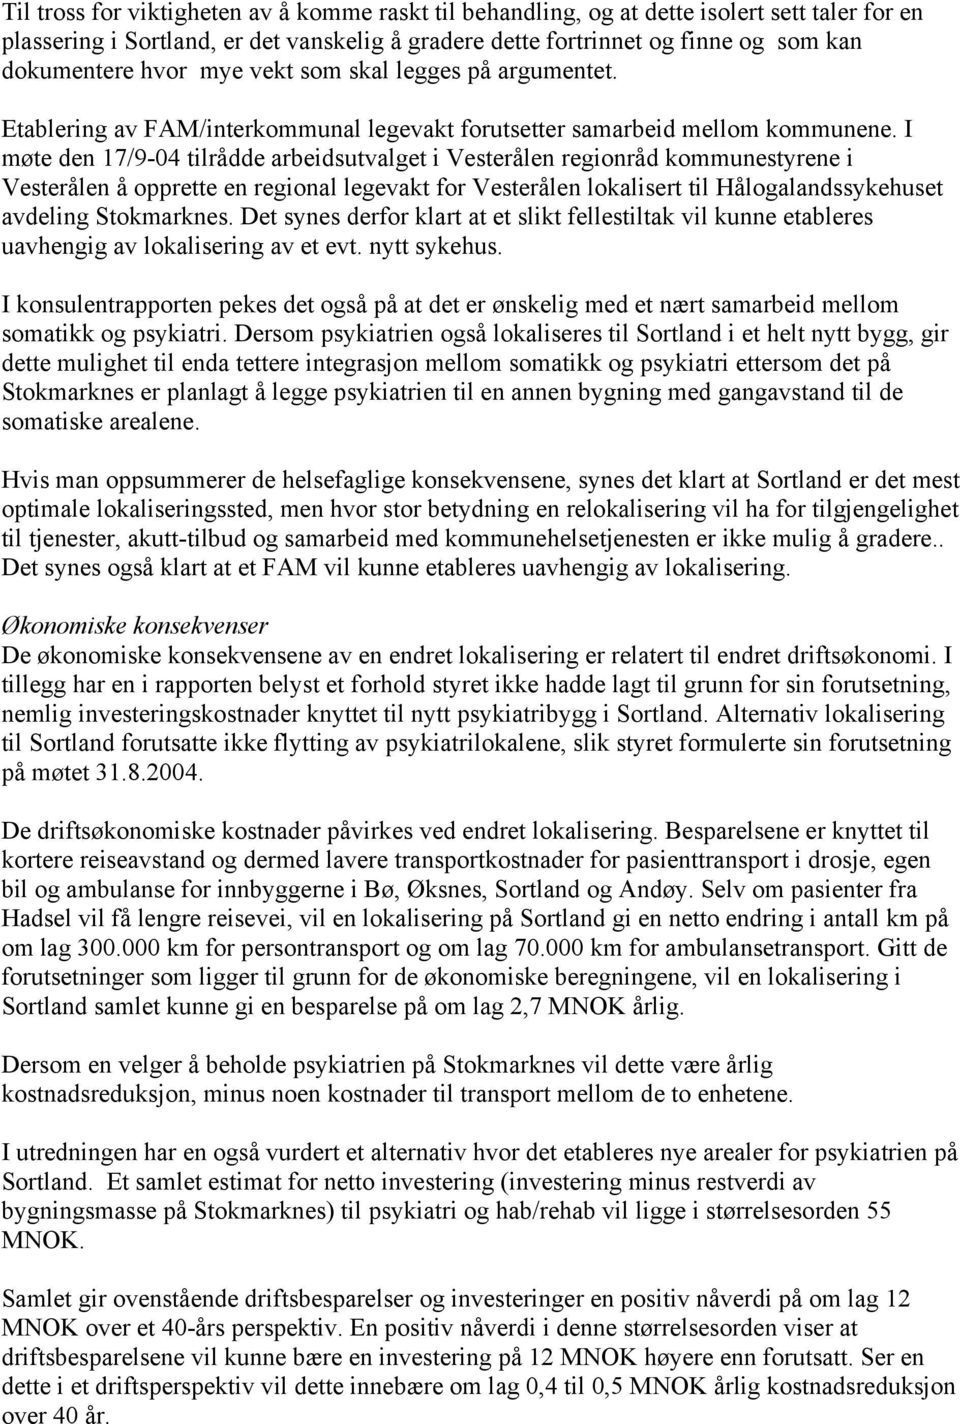 I møte den 17/9-04 tilrådde arbeidsutvalget i Vesterålen regionråd kommunestyrene i Vesterålen å opprette en regional legevakt for Vesterålen lokalisert til Hålogalandssykehuset avdeling Stokmarknes.